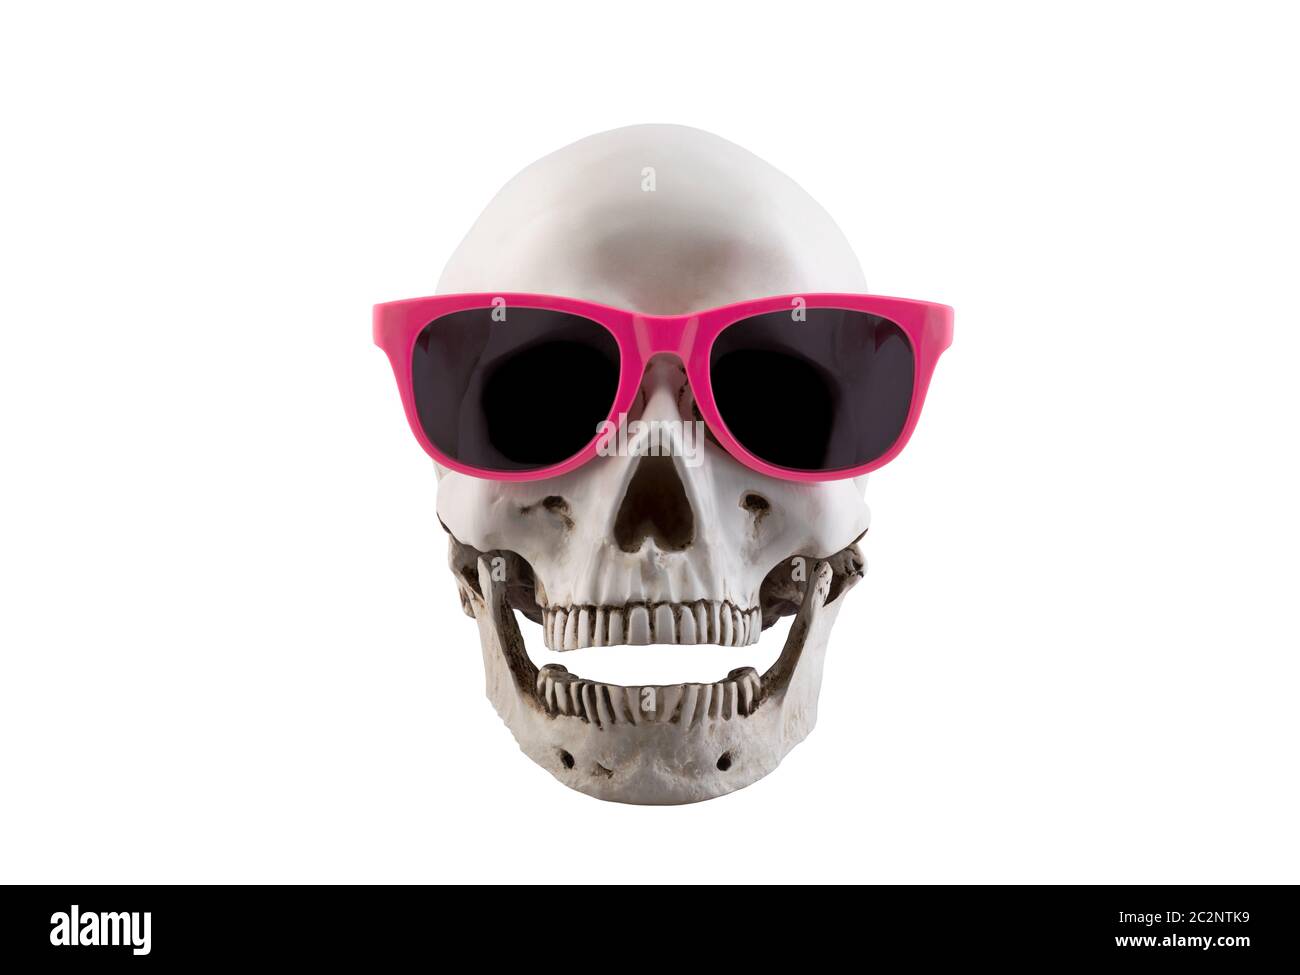 Crâne humain avec des lunettes roses et open jaw isolé sur fond blanc avec clipping path Banque D'Images